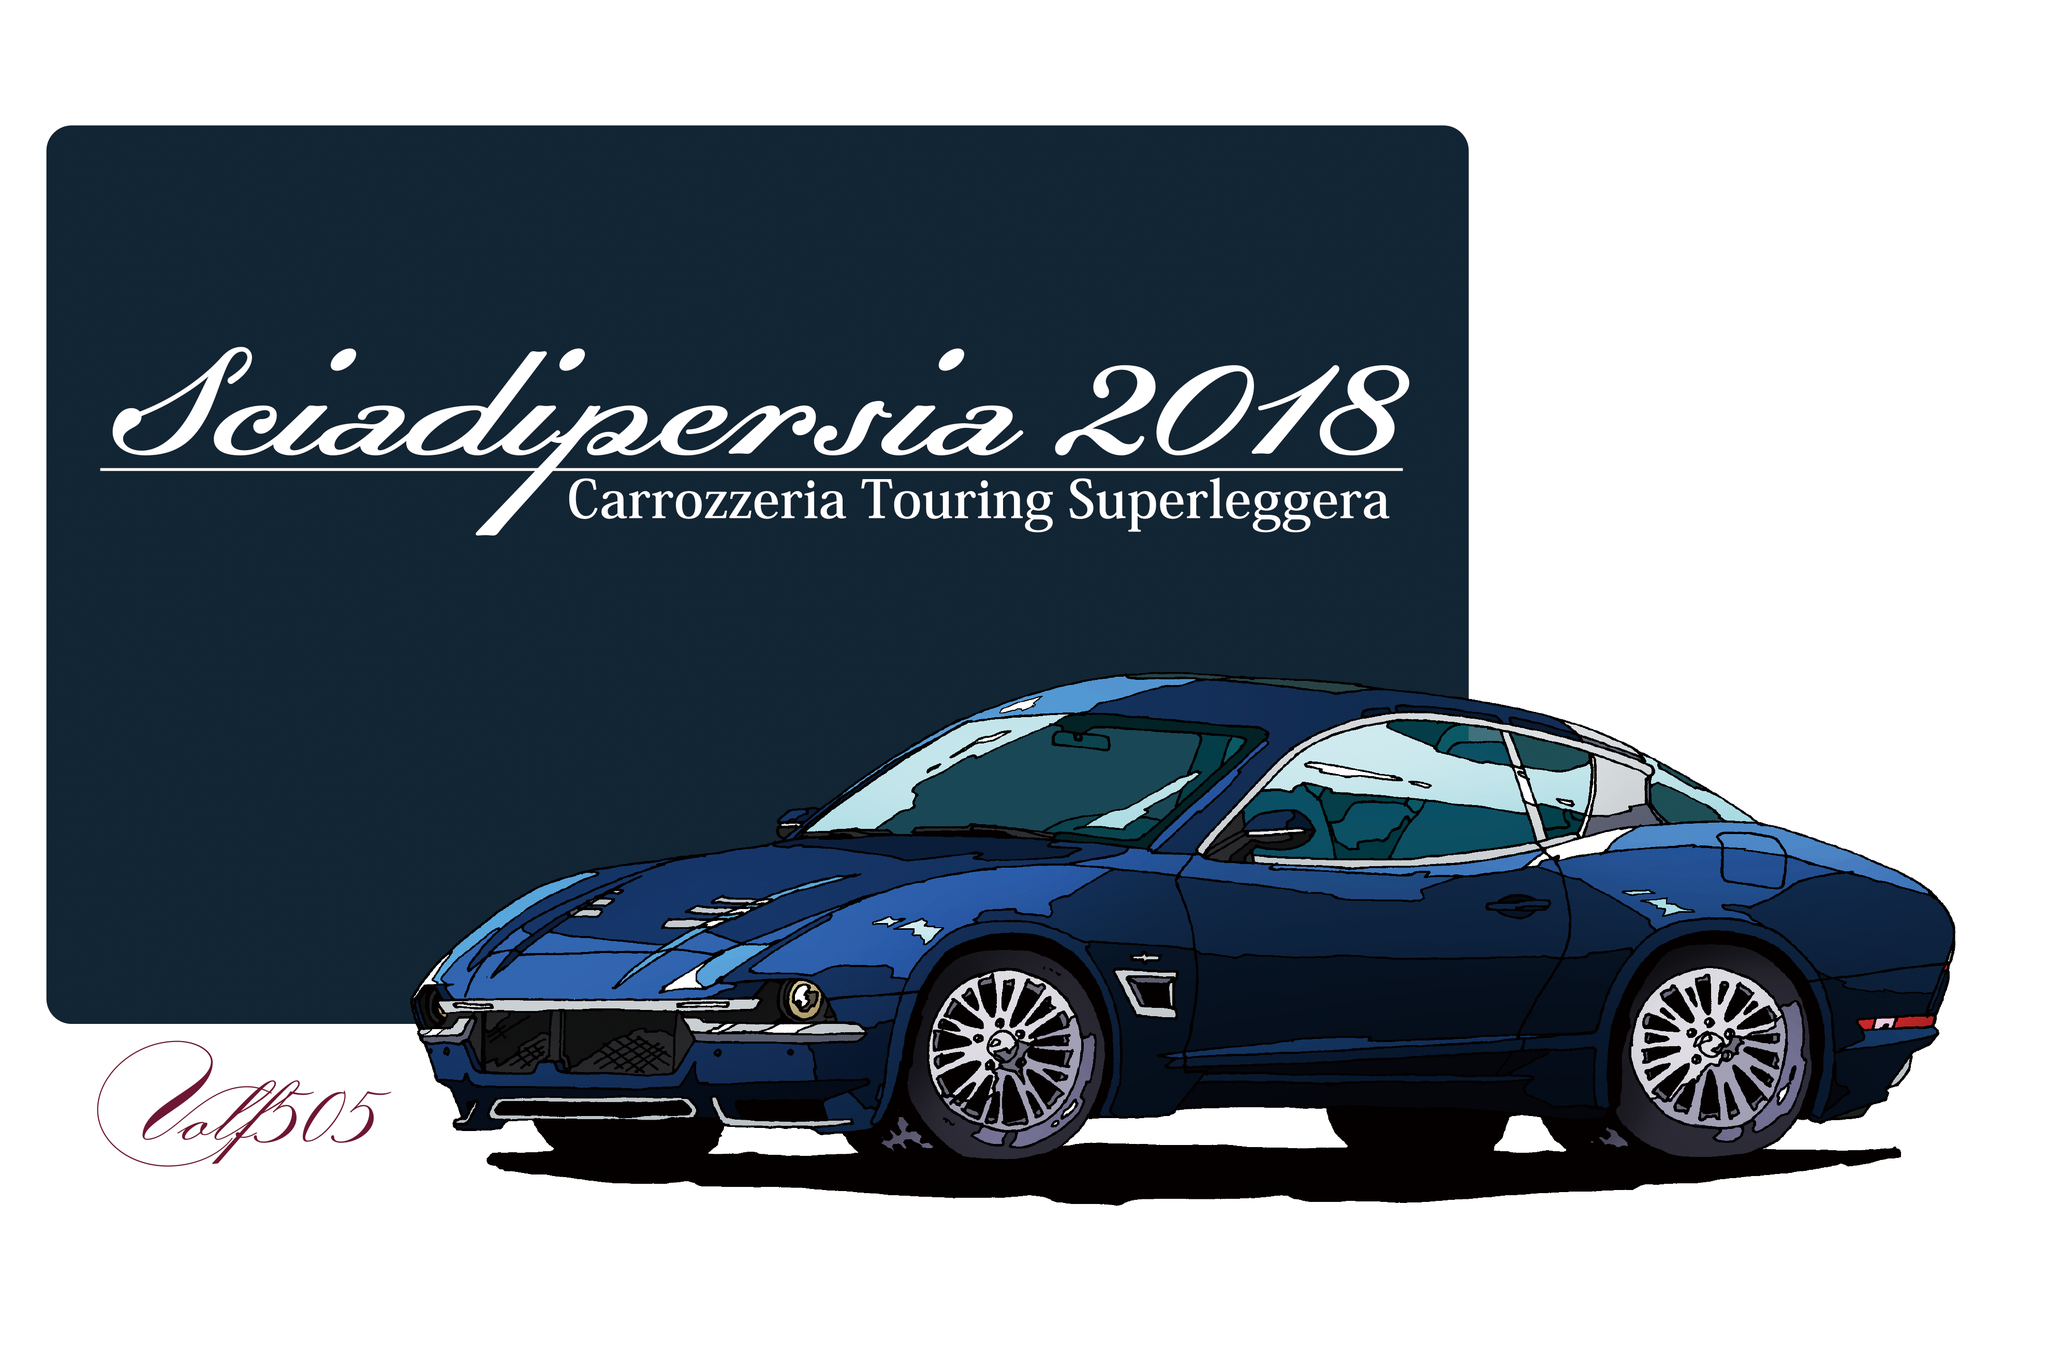 carrozzeria touring superleggera sciadipersia 2018